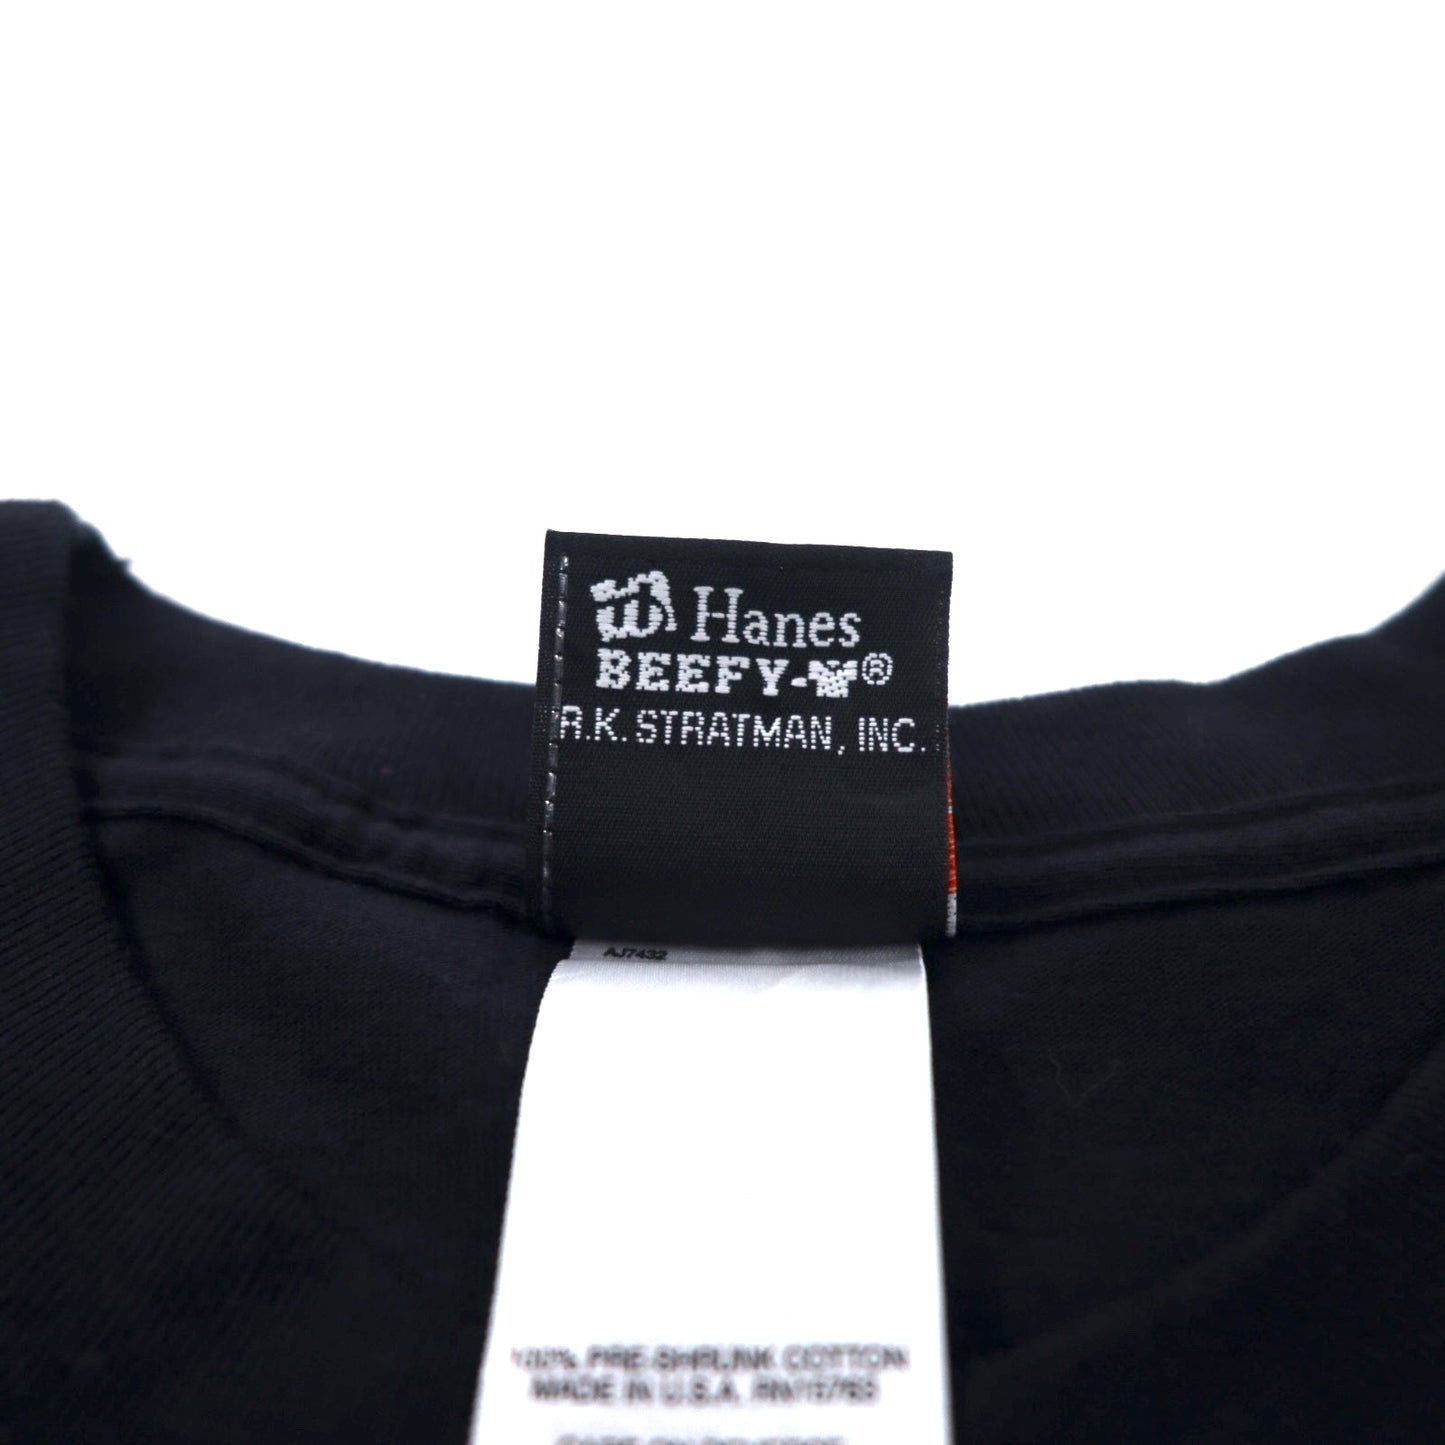 HARLEY DAVIDSON USA製 ロゴプリント Tシャツ 2XL ブラック コットン Arkansas 両面プリント Hanes BEEFY-T ビッグサイズ